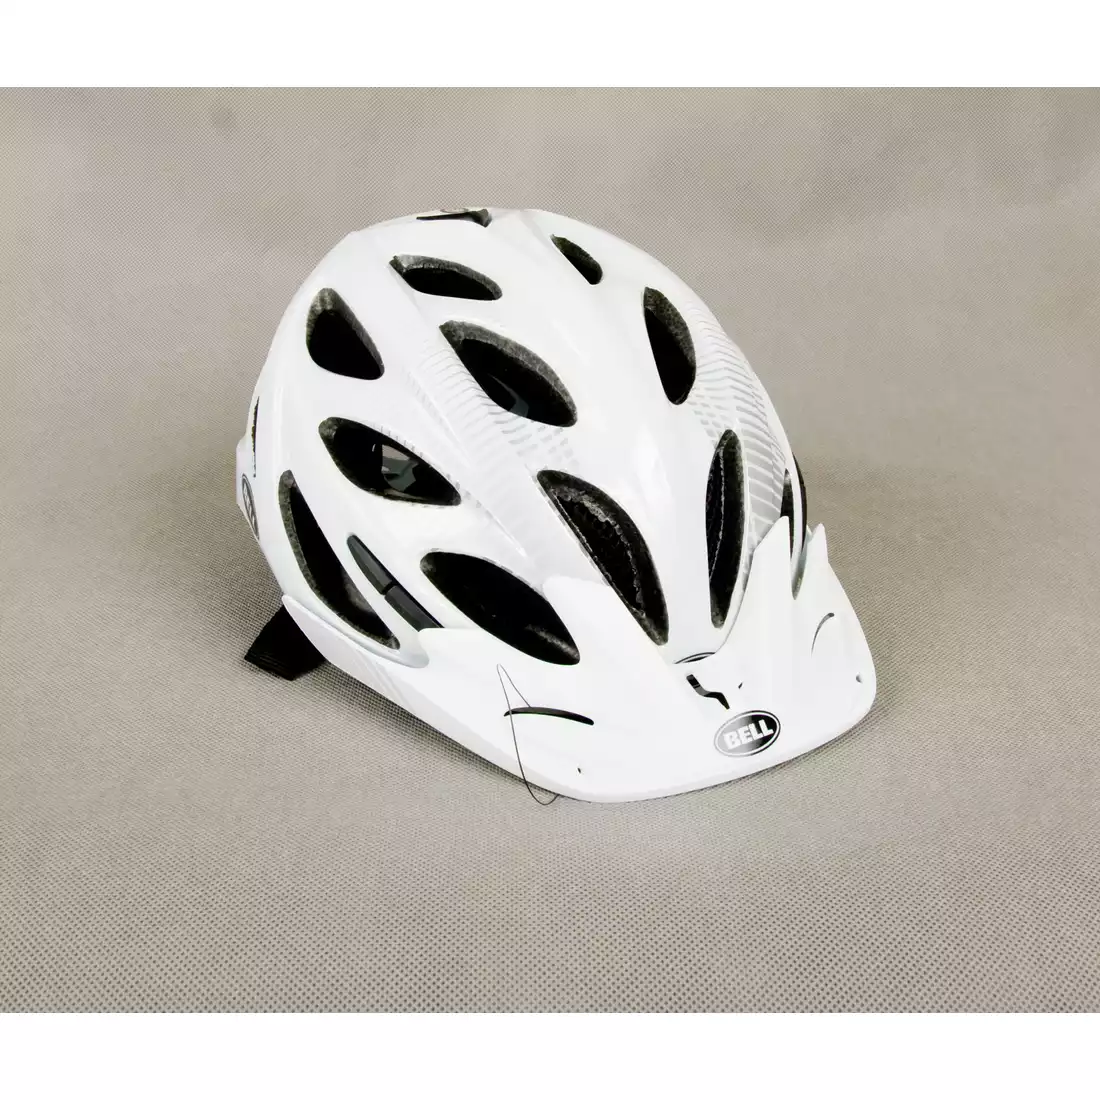 BELL - kask rowerowy MUNI, kolor: Biało-srebrny